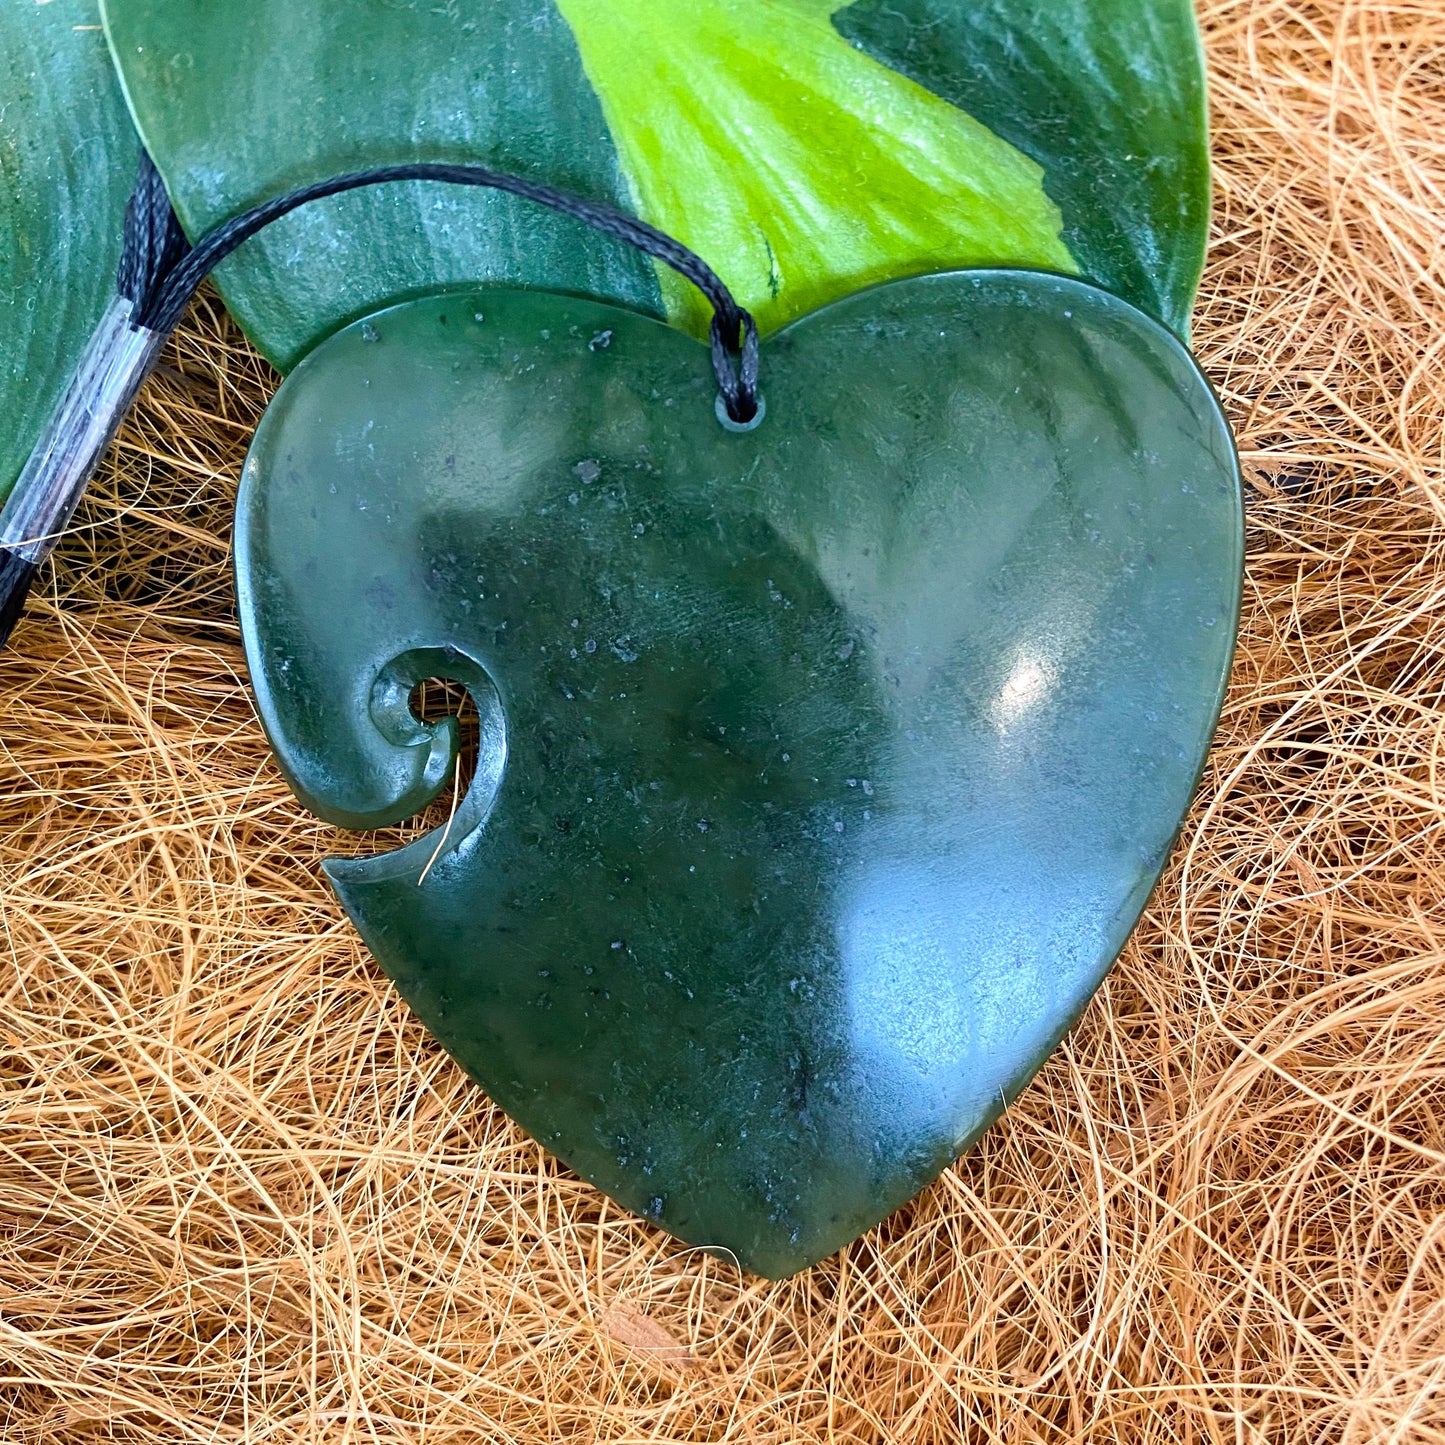 Heart Greenstone Pendant with Koru Indentation - Rivendell Shop